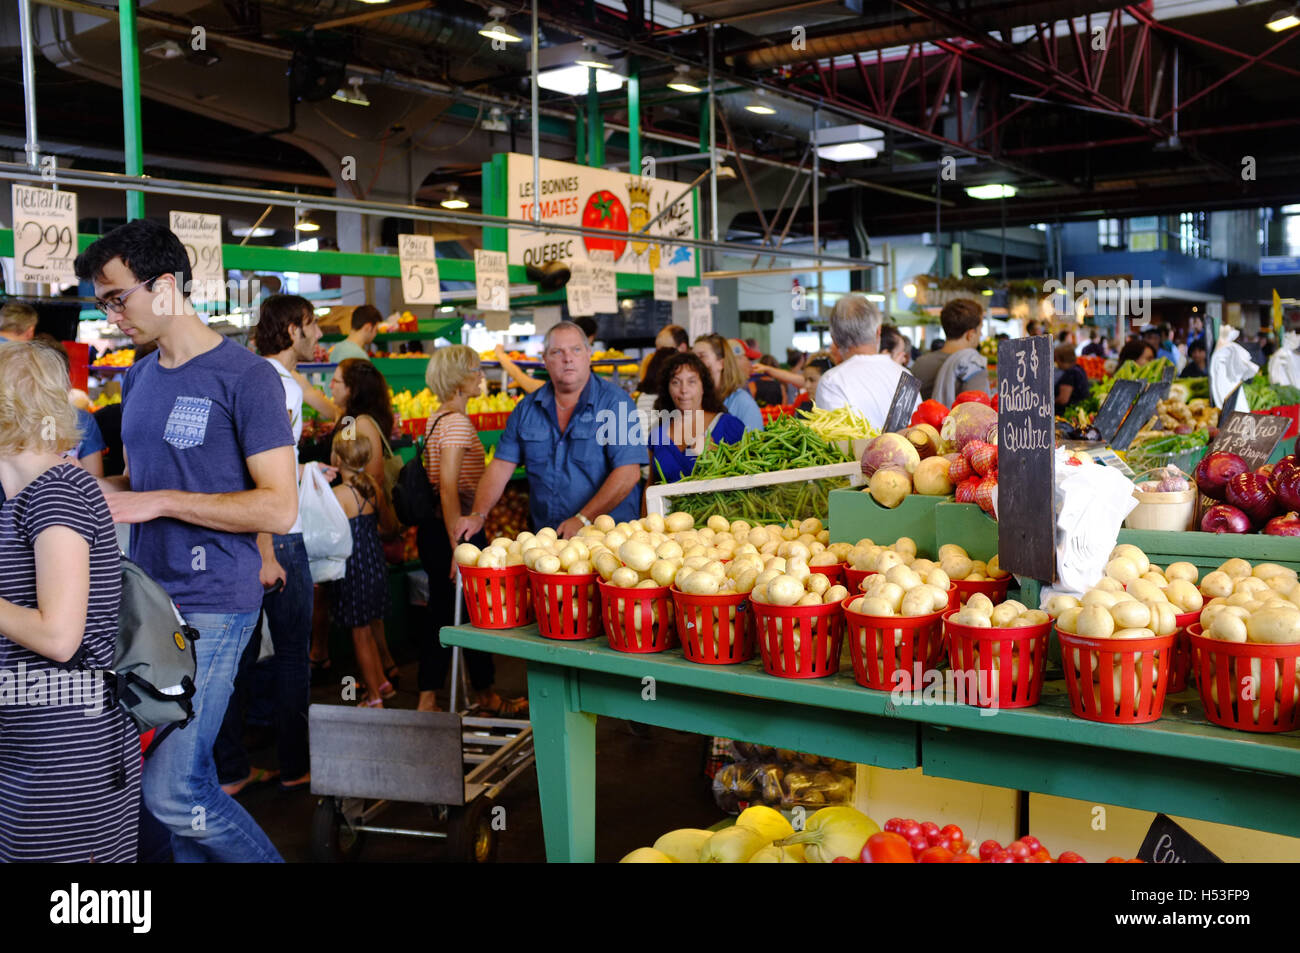 Inside Jean talon Market in Montreal Stock Photo